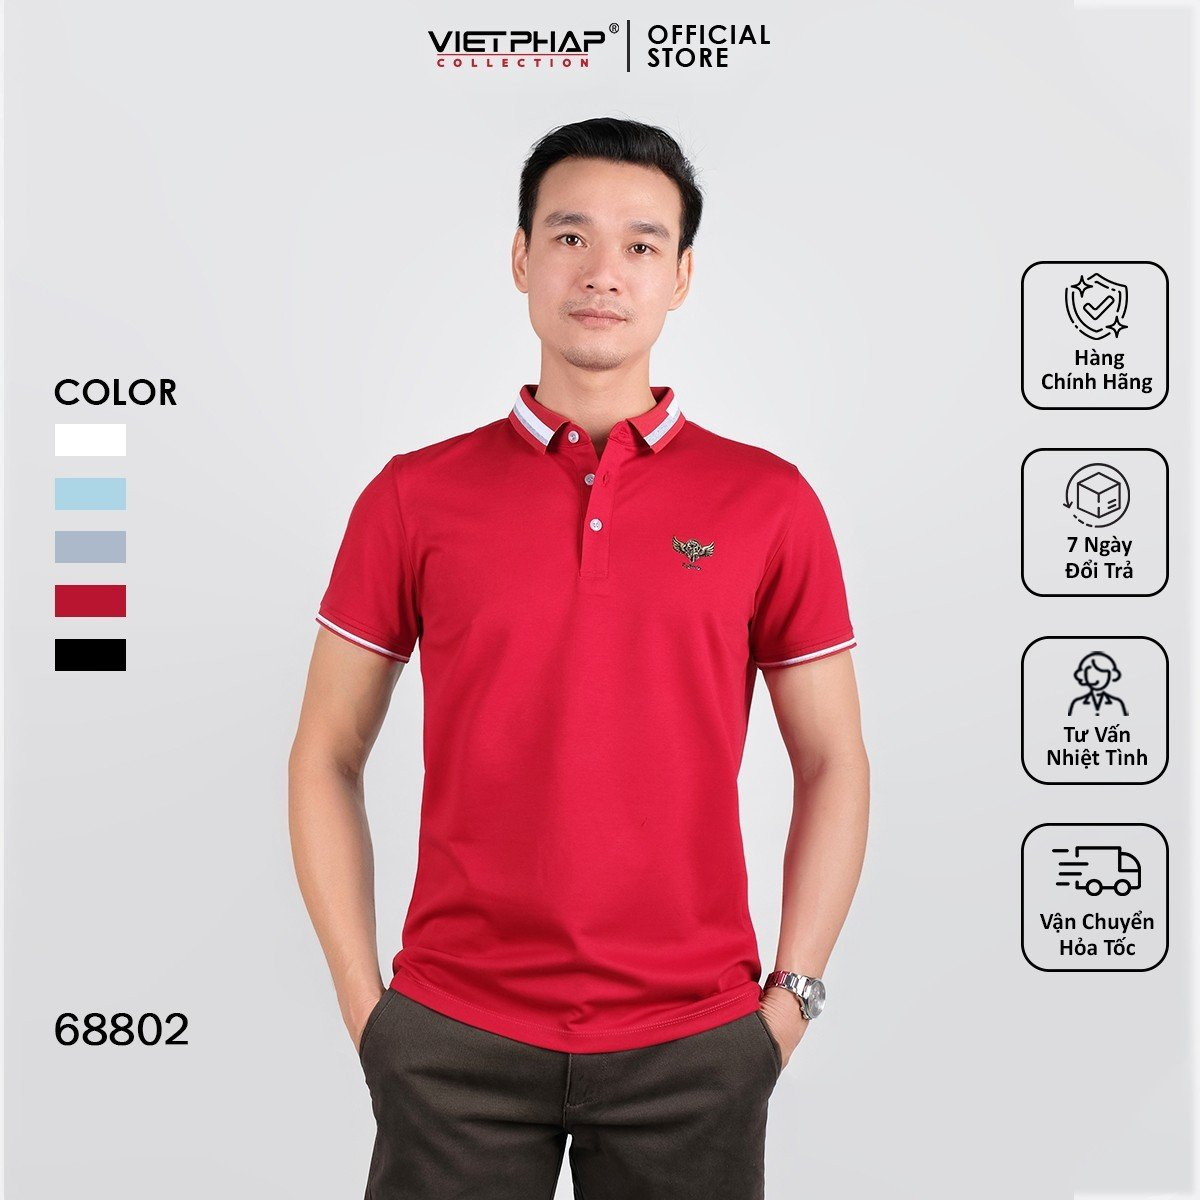 Áo Polo nam VIETPHAP phối logo thanh lịch, vải cotton, FitSoft 68802 - hàng chính hãng